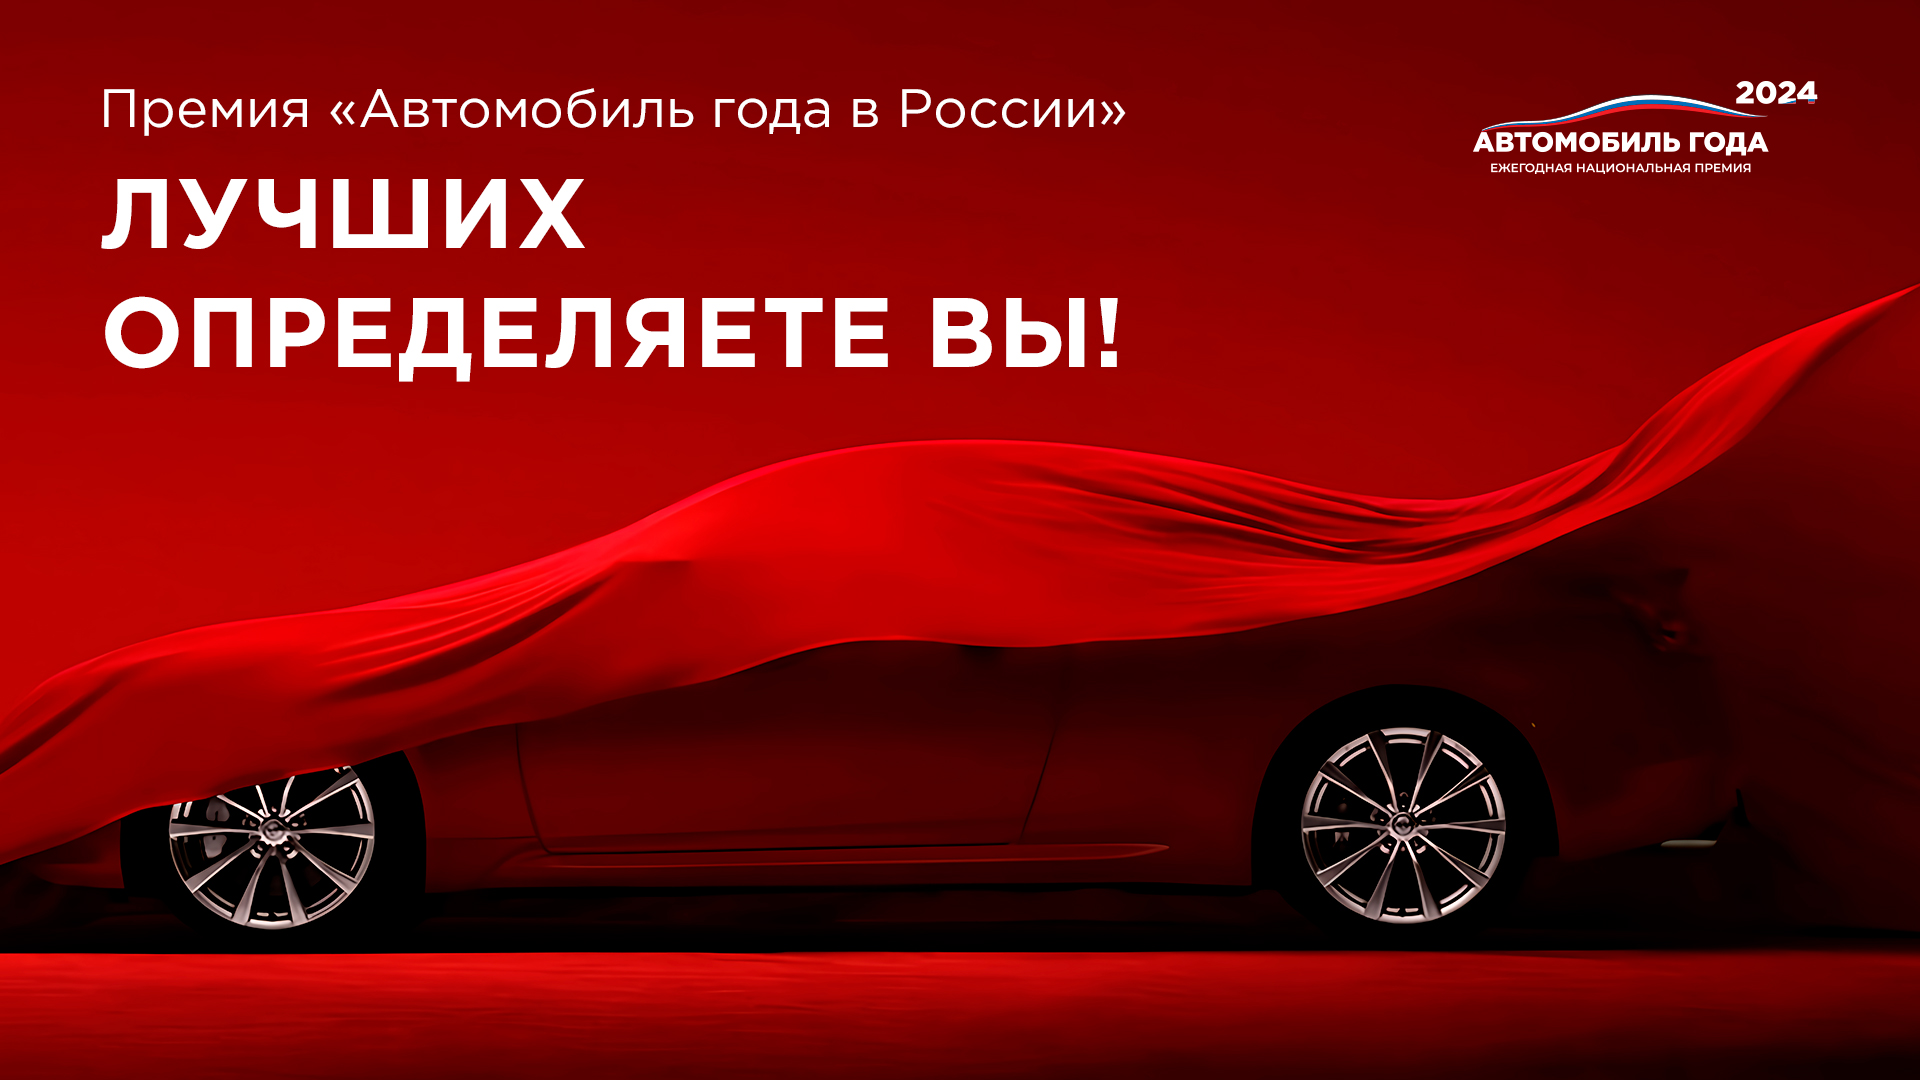 Национальная премия «Автомобиль года в России – 2024» стартовала